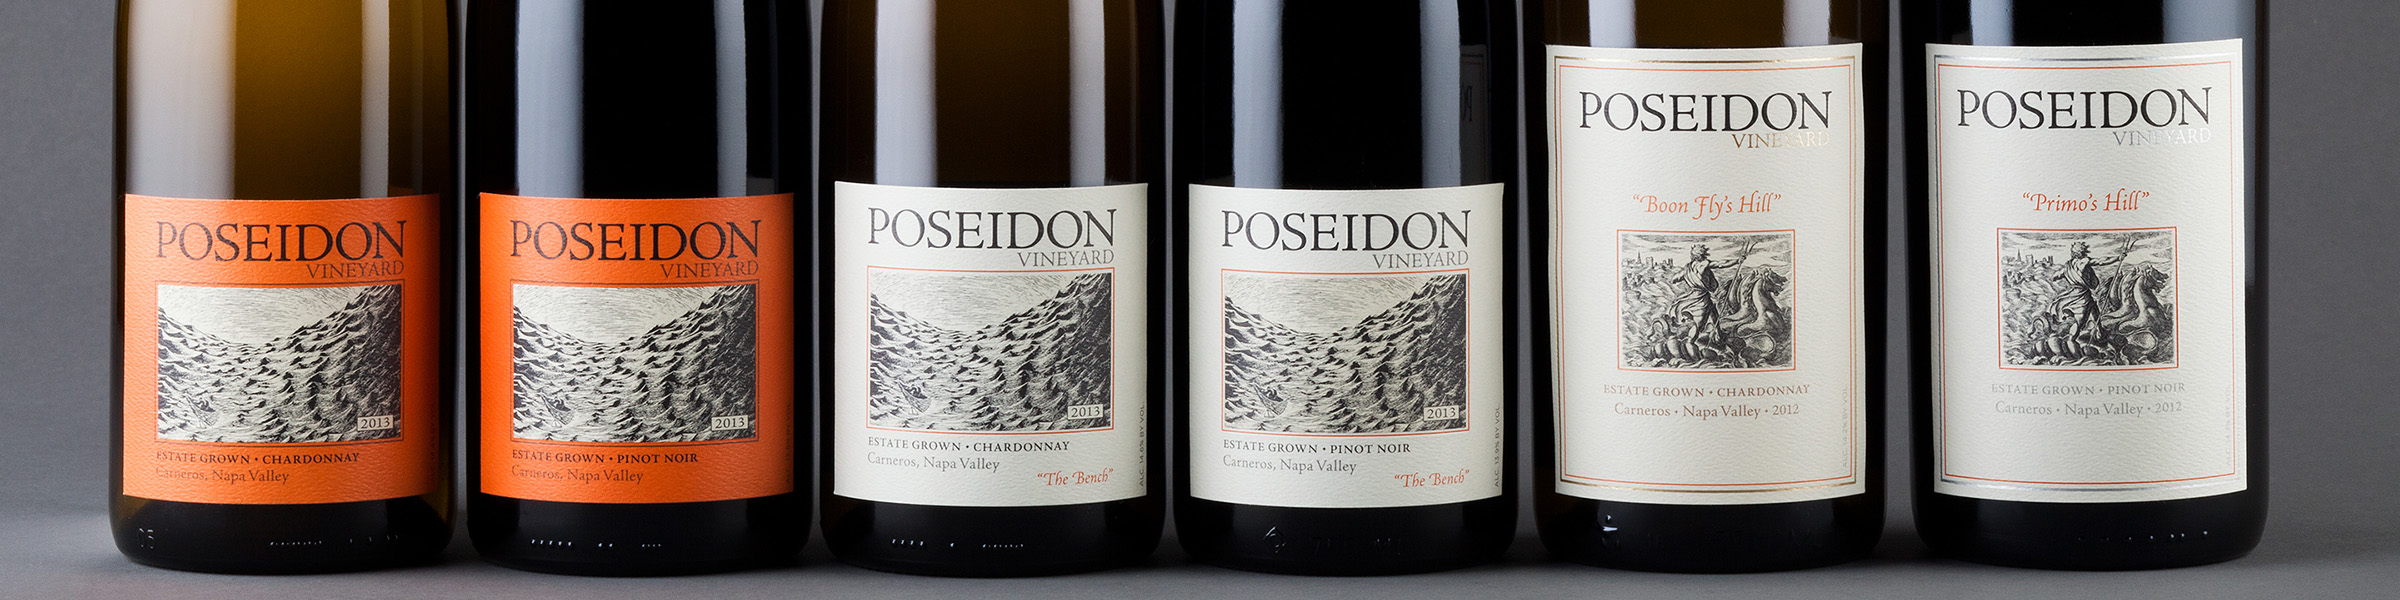 poseidon vineyard wine bottles